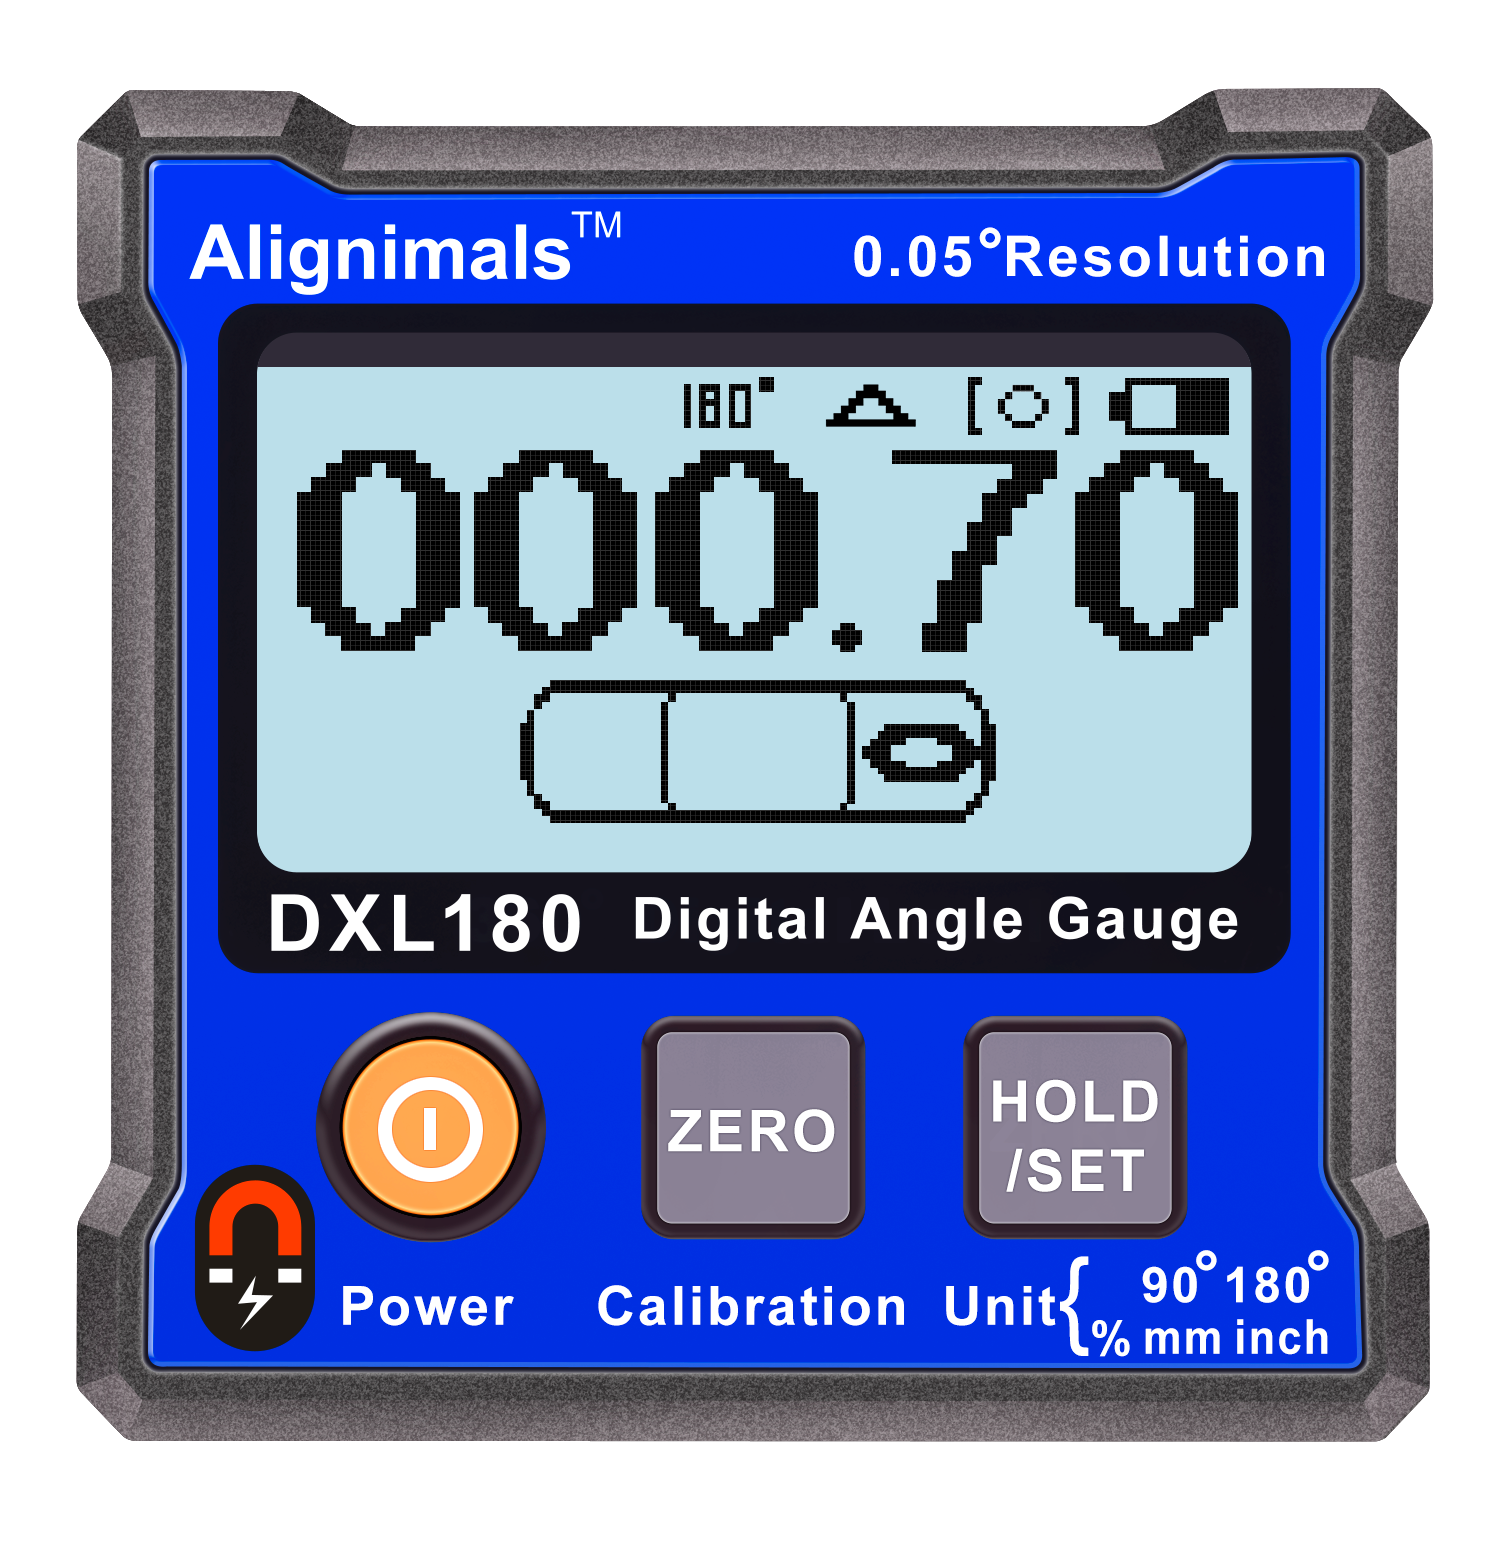 Alignimals DXL180